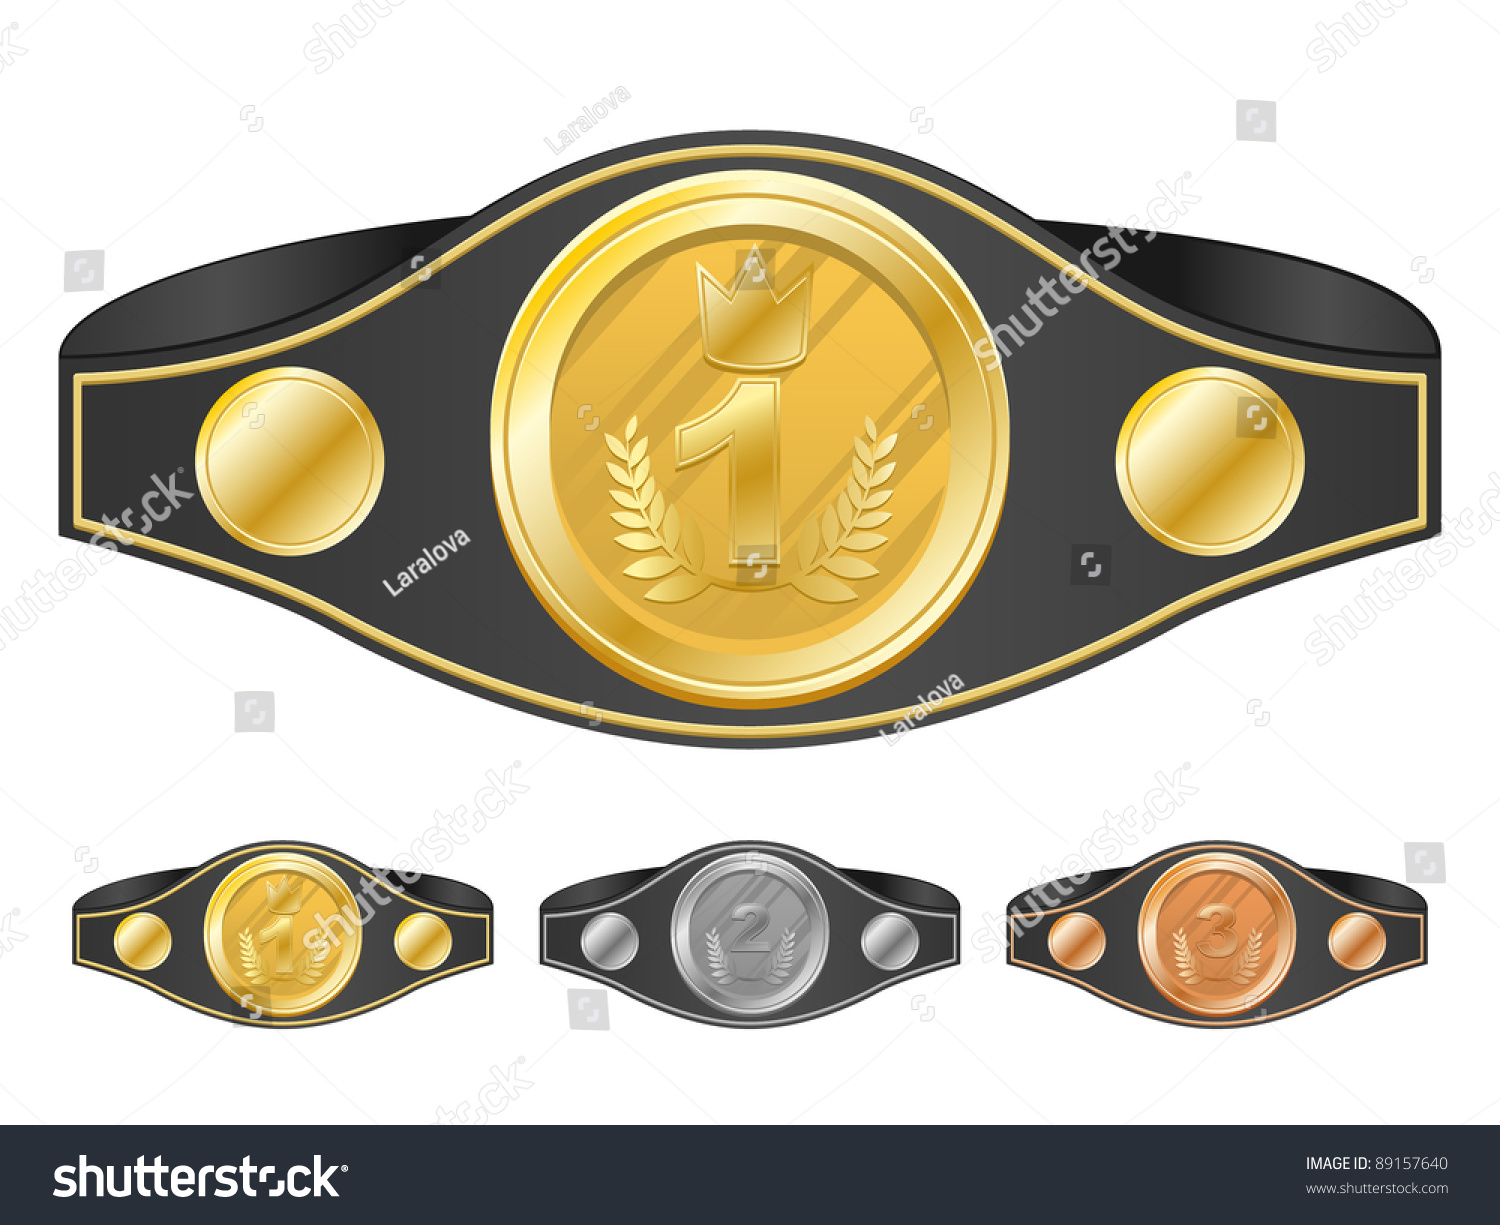 SVG of Three champion belts. Vector illustration. svg